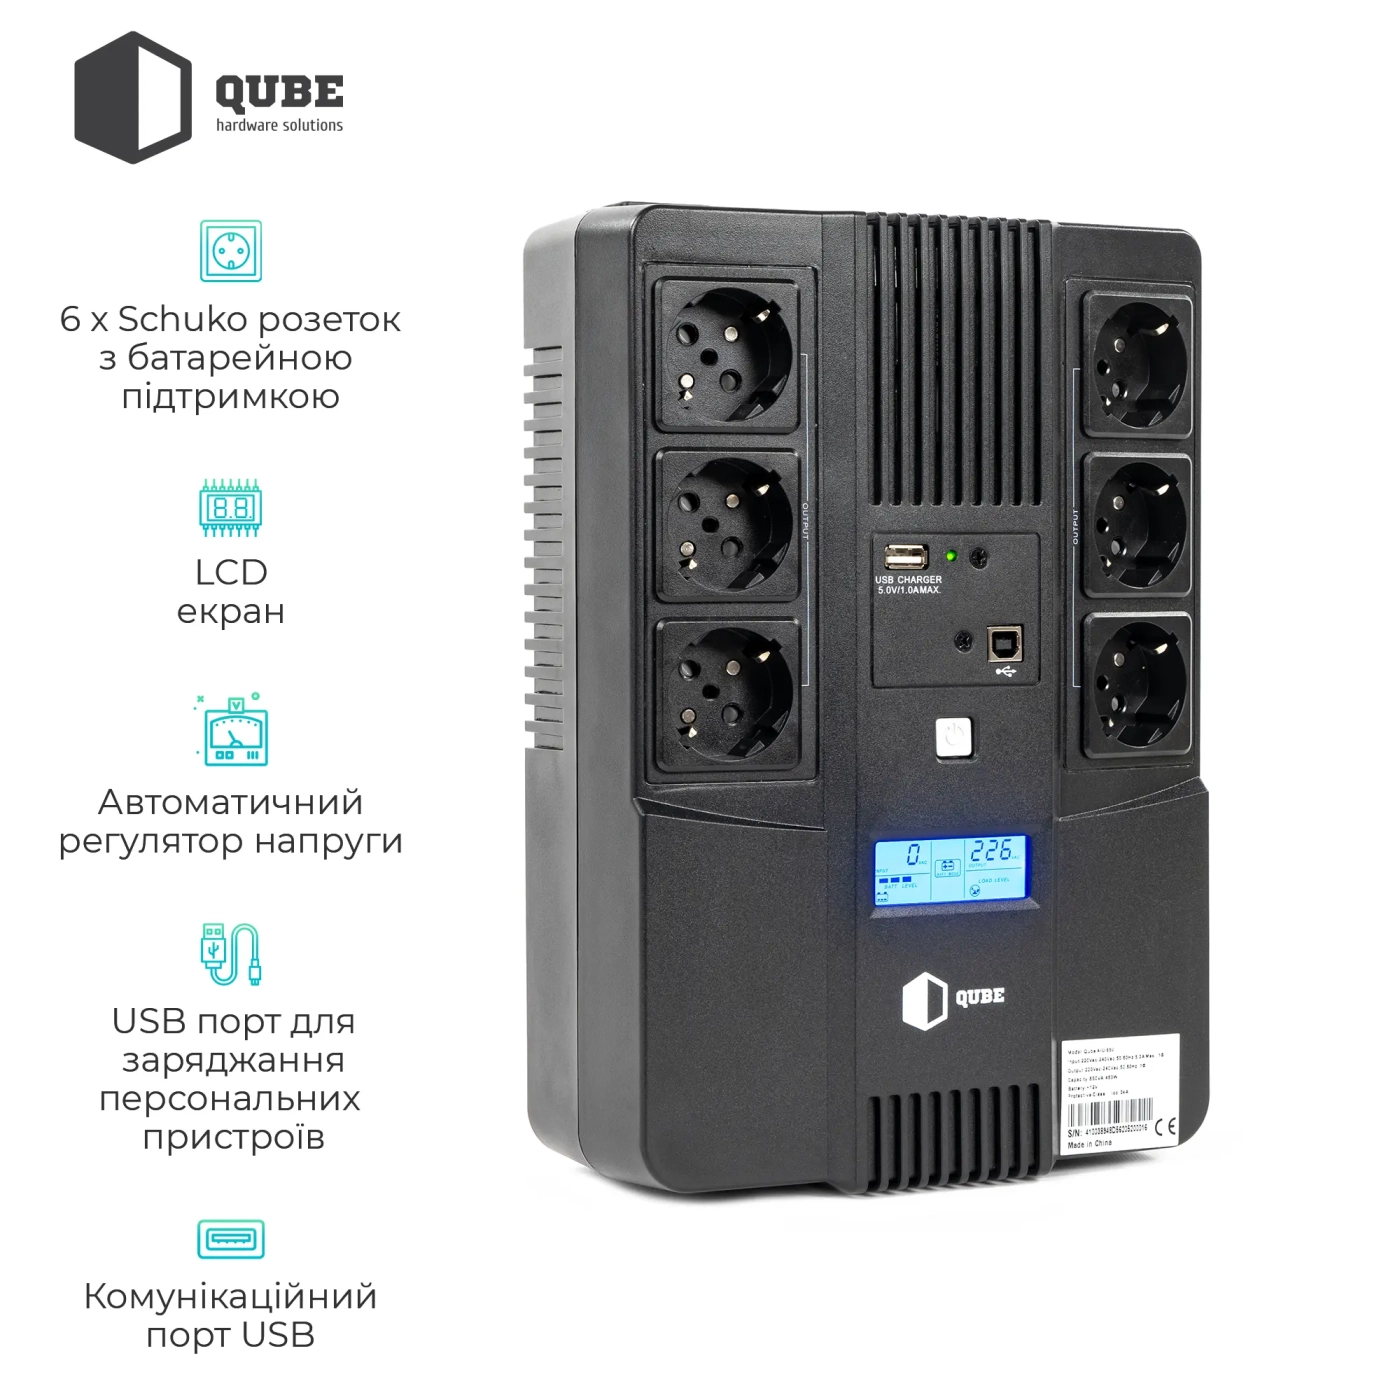 Купить ИБП (UPS) линейно-интерактивный Qube AIO 850, 850VA/480W, LCD, 6 x Schuko, RJ-45, USB - фото 3